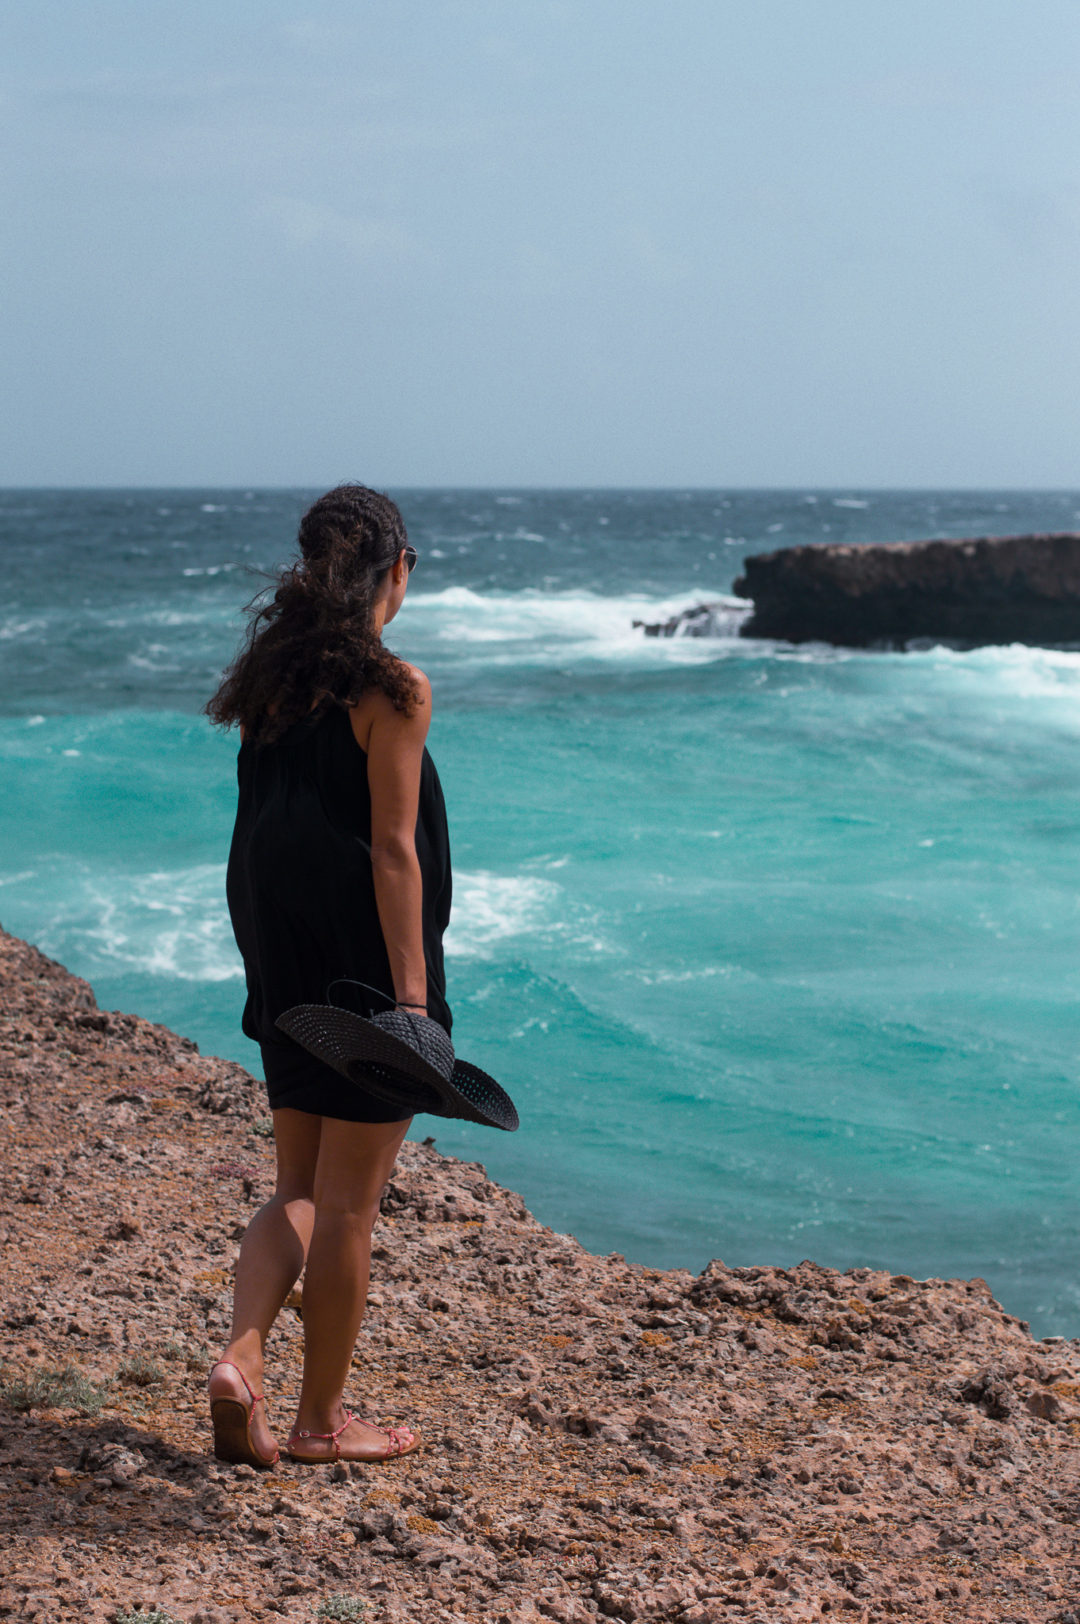 Overlooking the ocean in Aruba